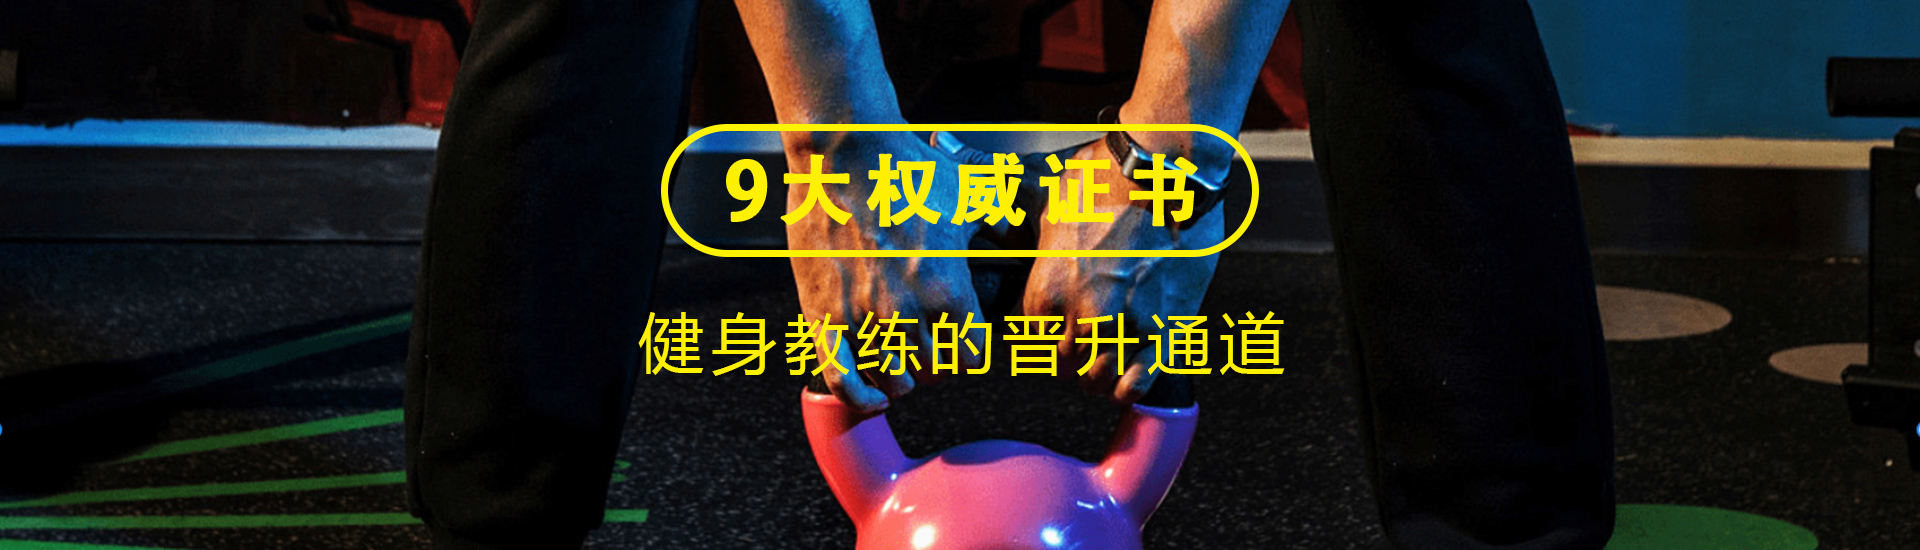 重庆健身综合全能教练培训课程